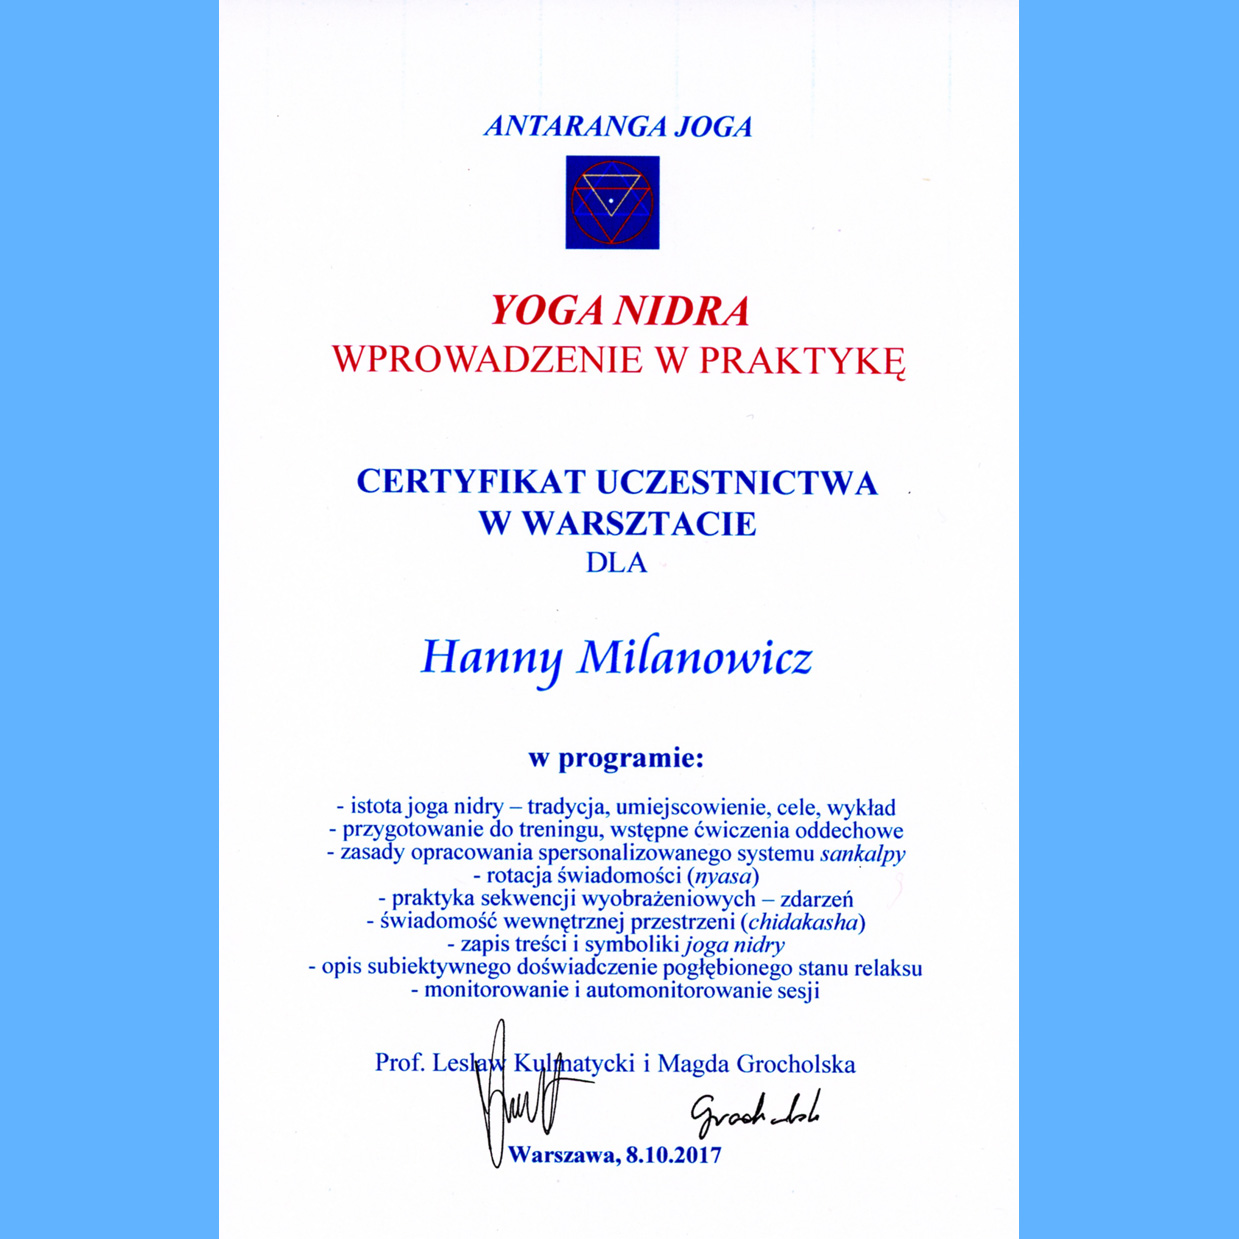 certificate - Yoga Nidra workshop with Lesław Kulmatycki